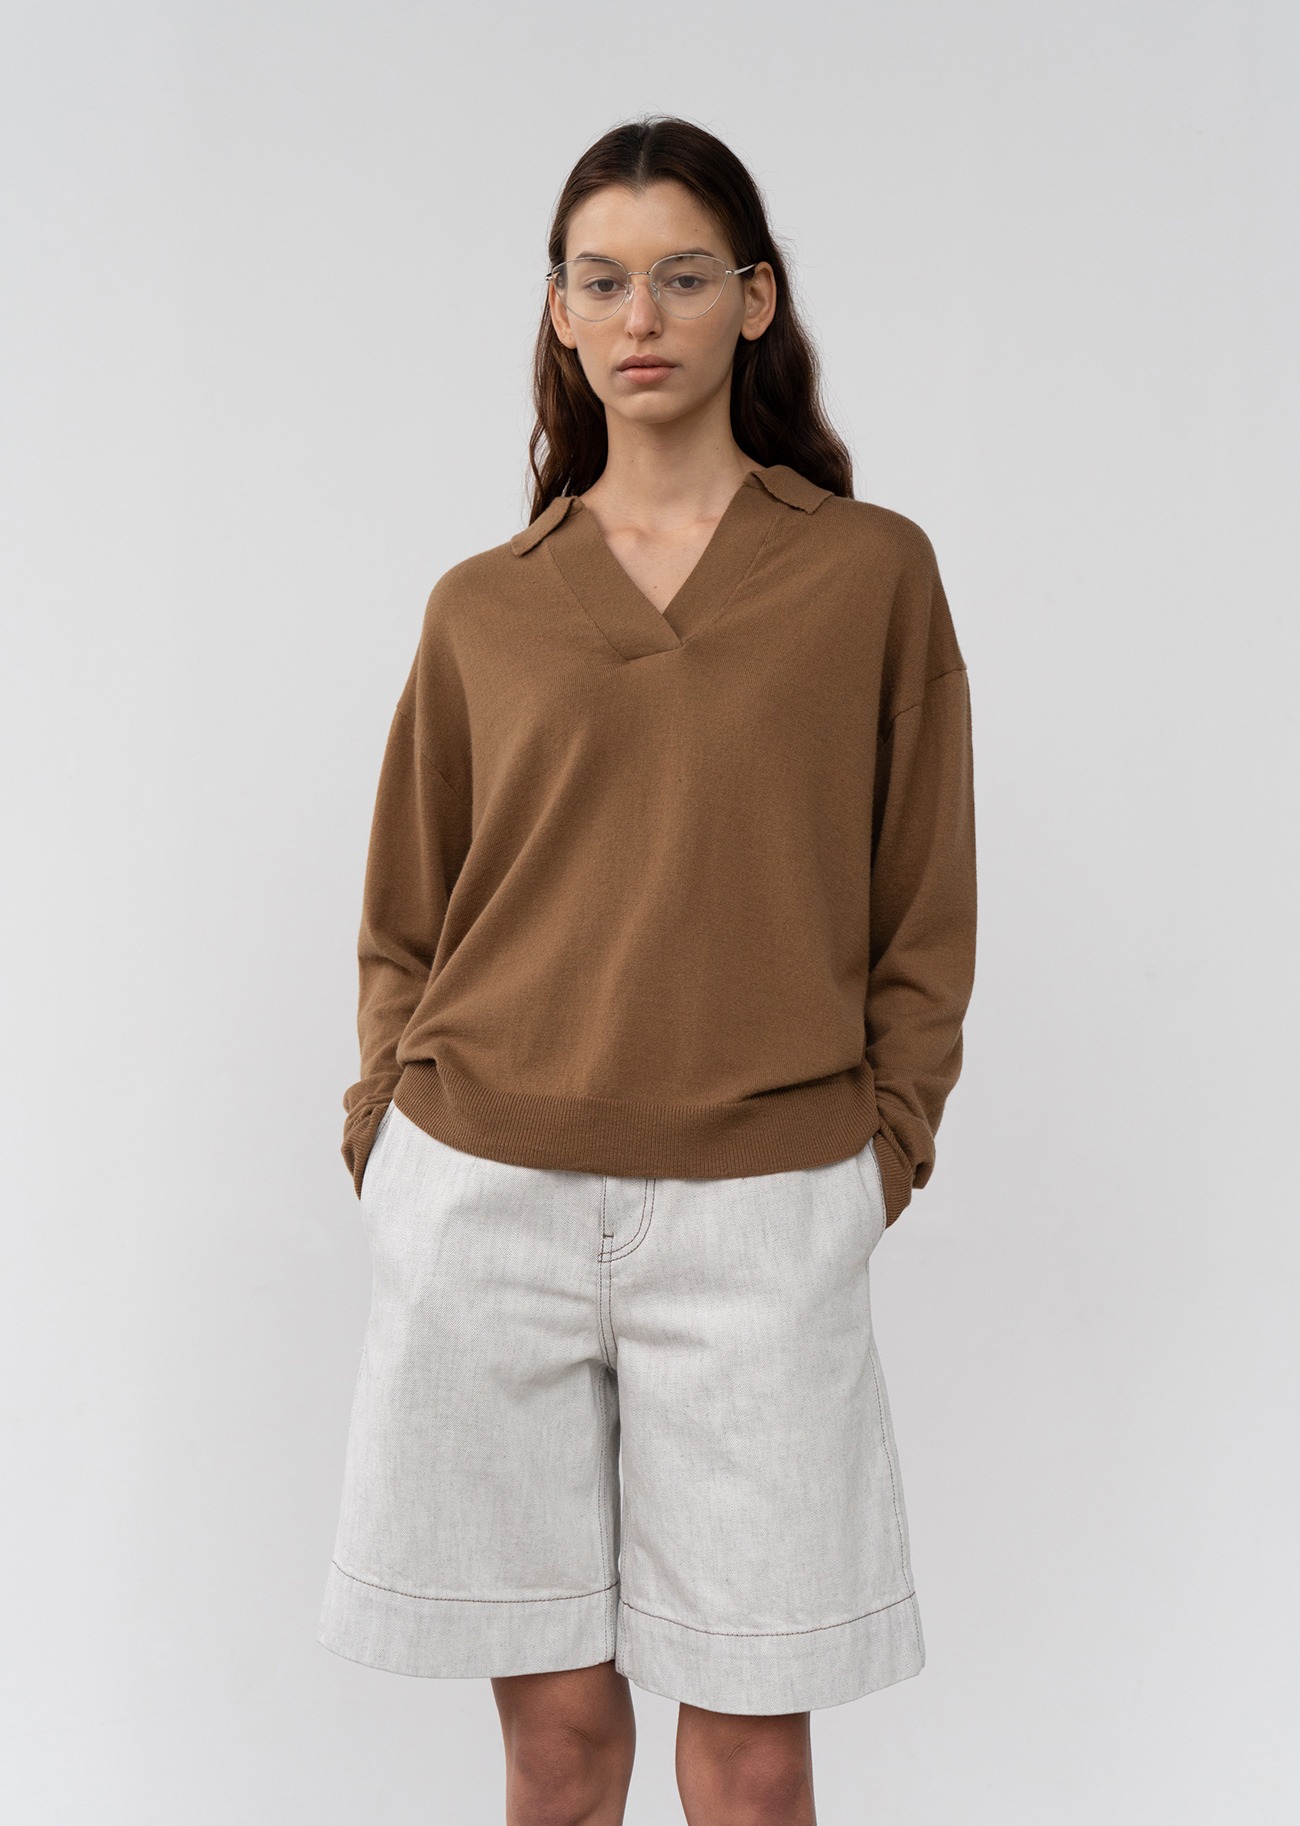 V-neck Collar Cashmere blended Knit Sweater - Camel